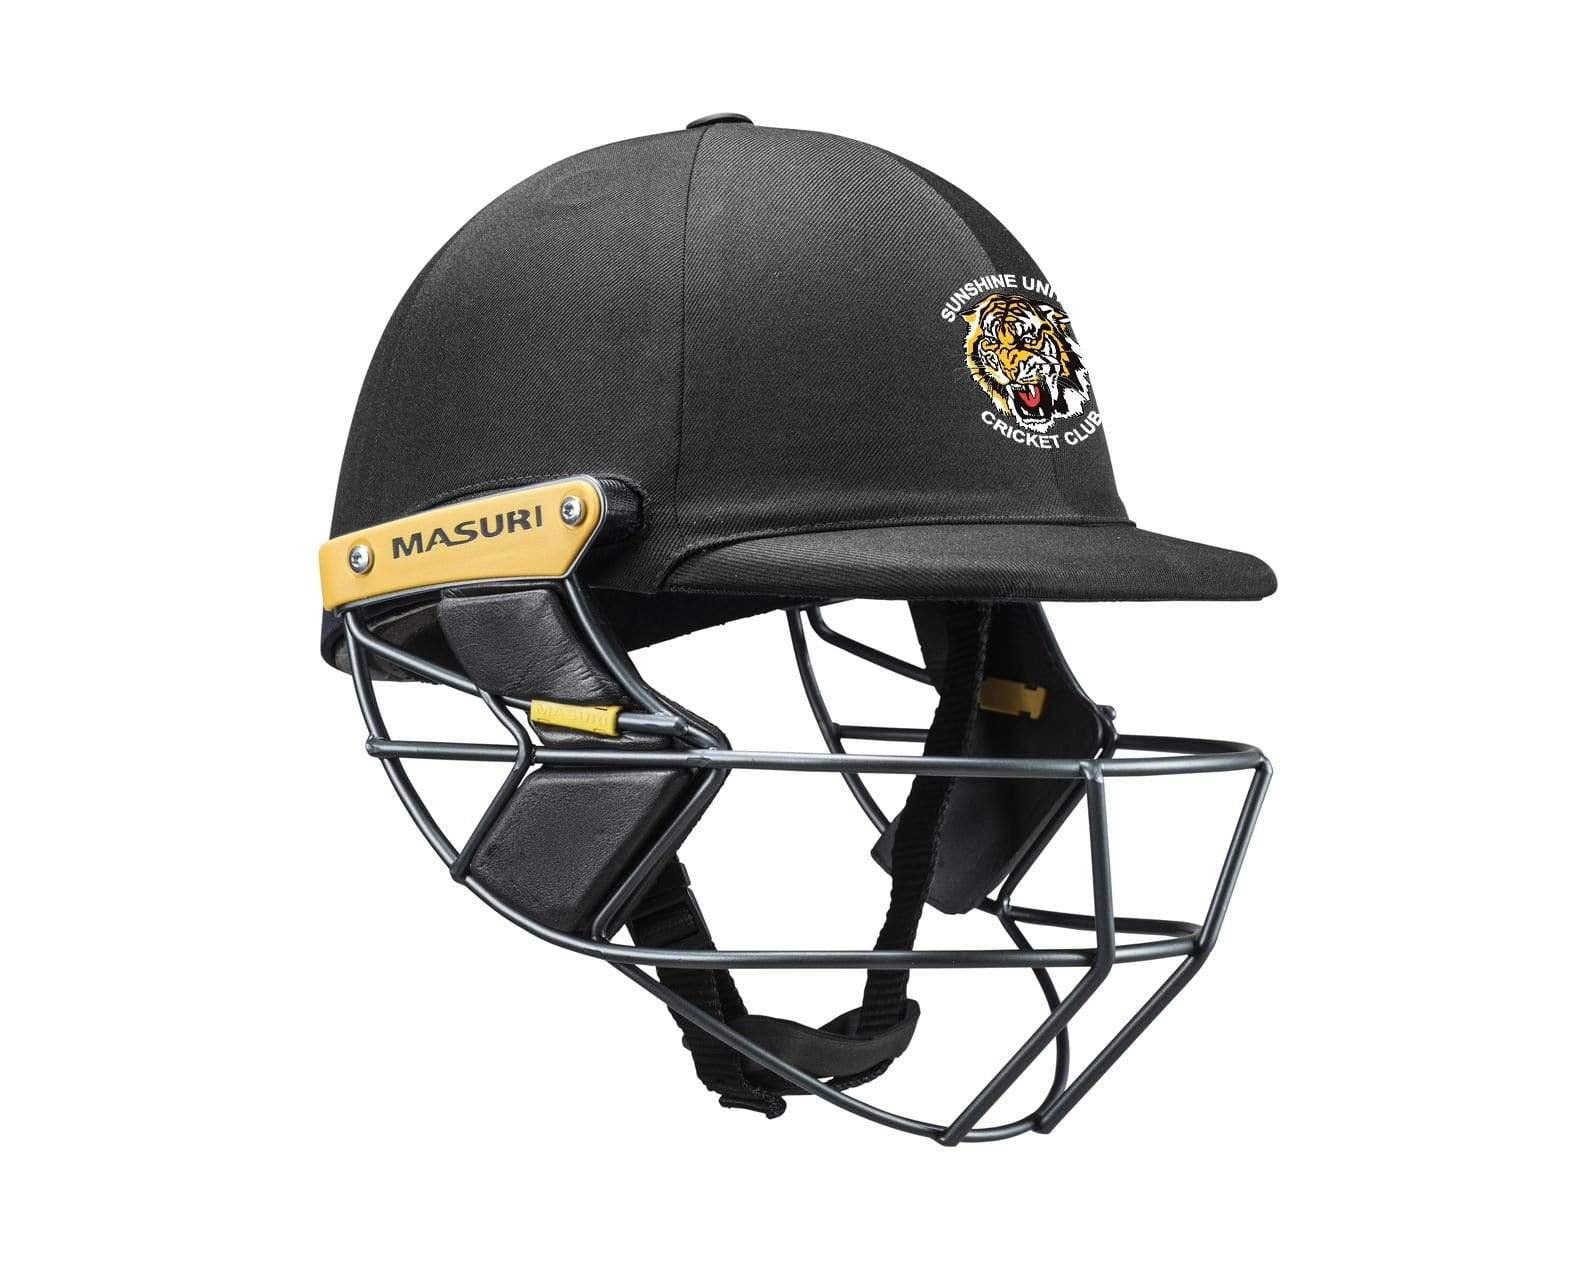 Masuri Club Helmet Sunshine United Cricket Club Helmet